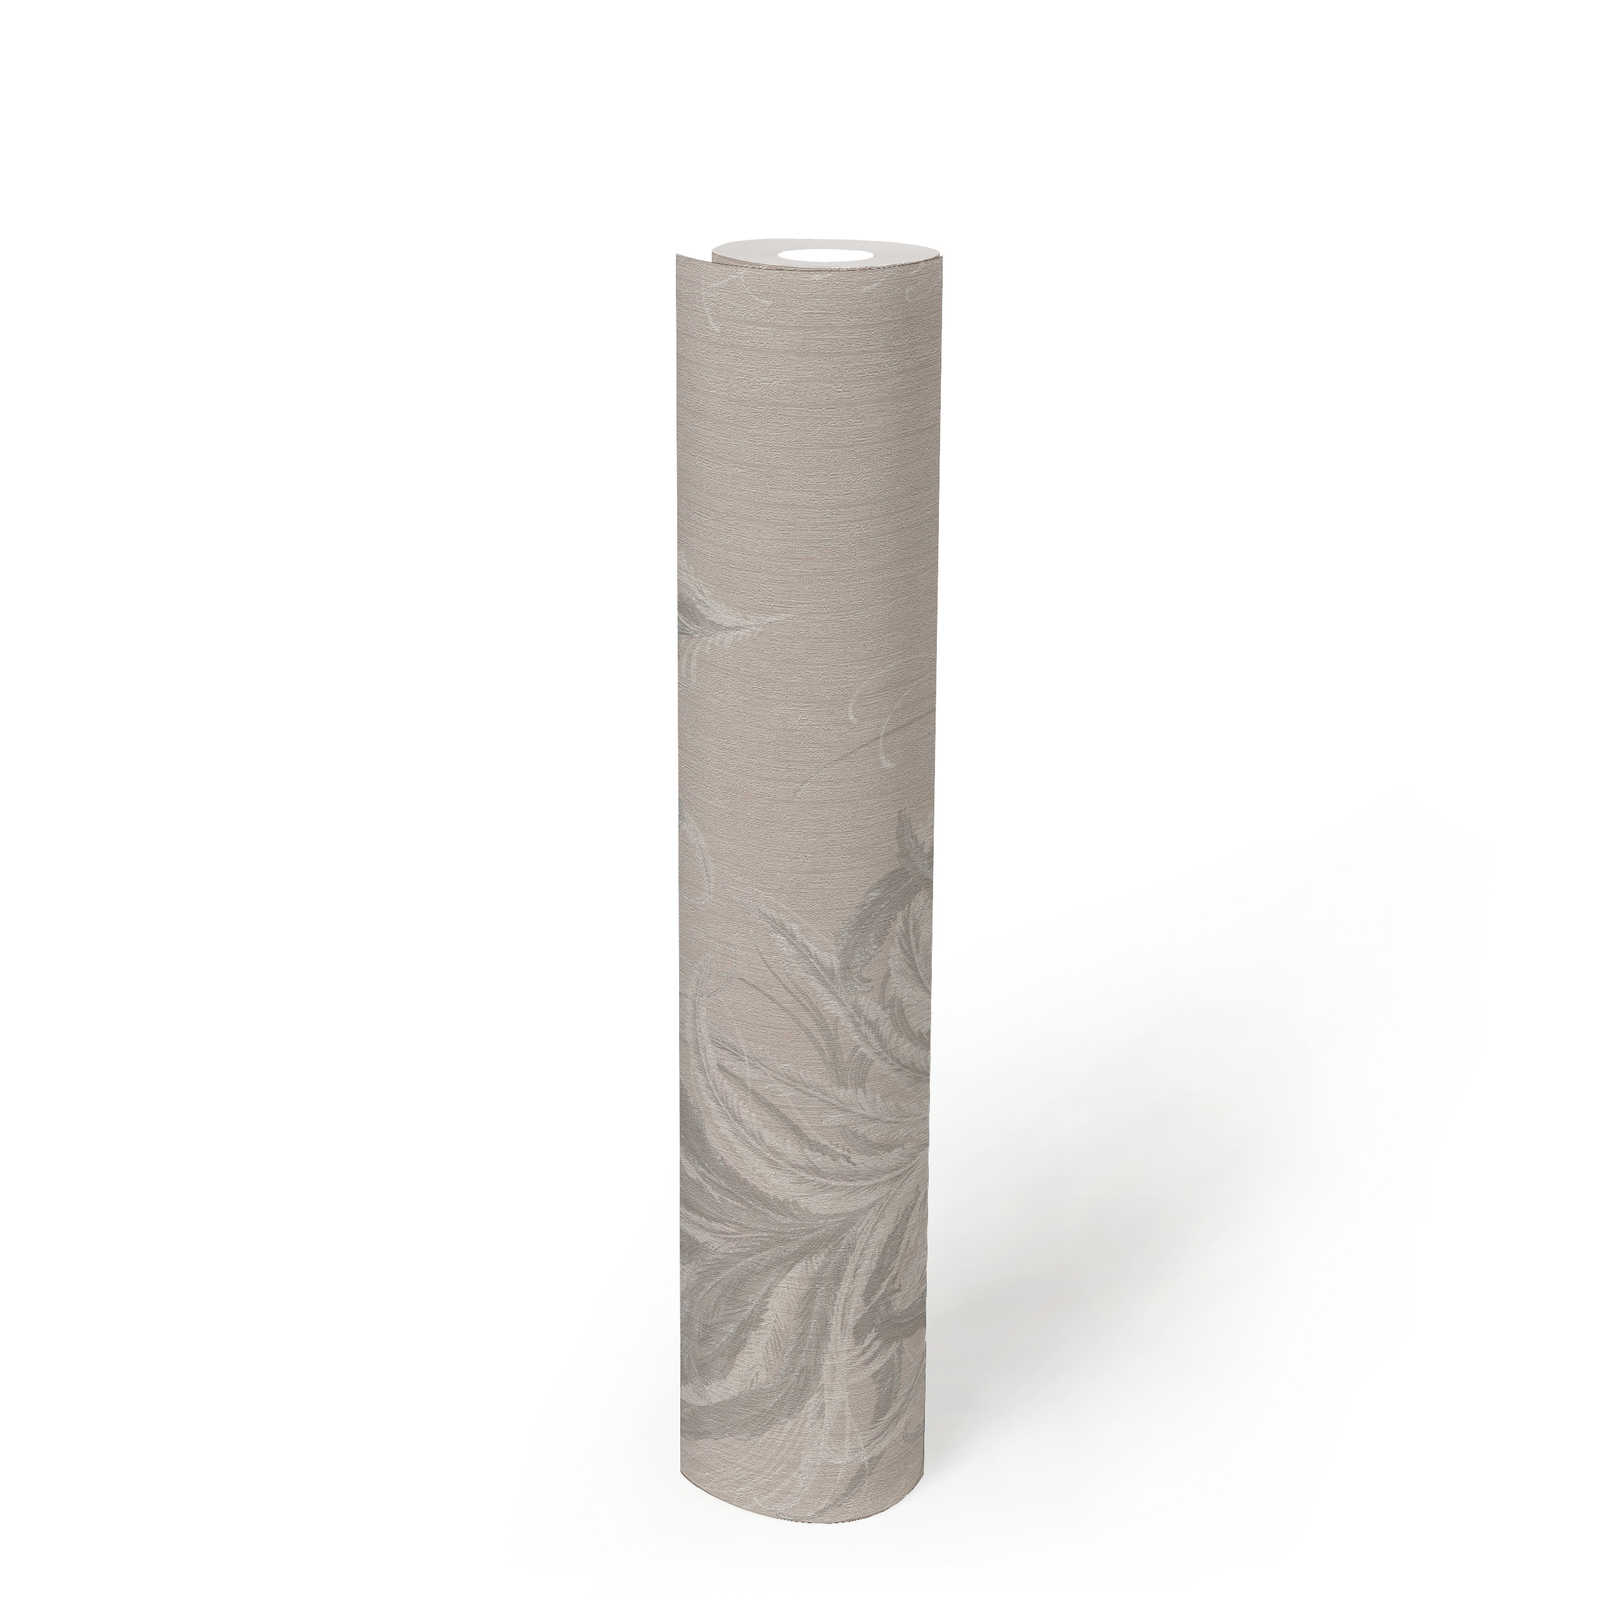             Carta da parati non tessuta con disegno di piume ed effetto lucido della struttura - grigio, bianco
        